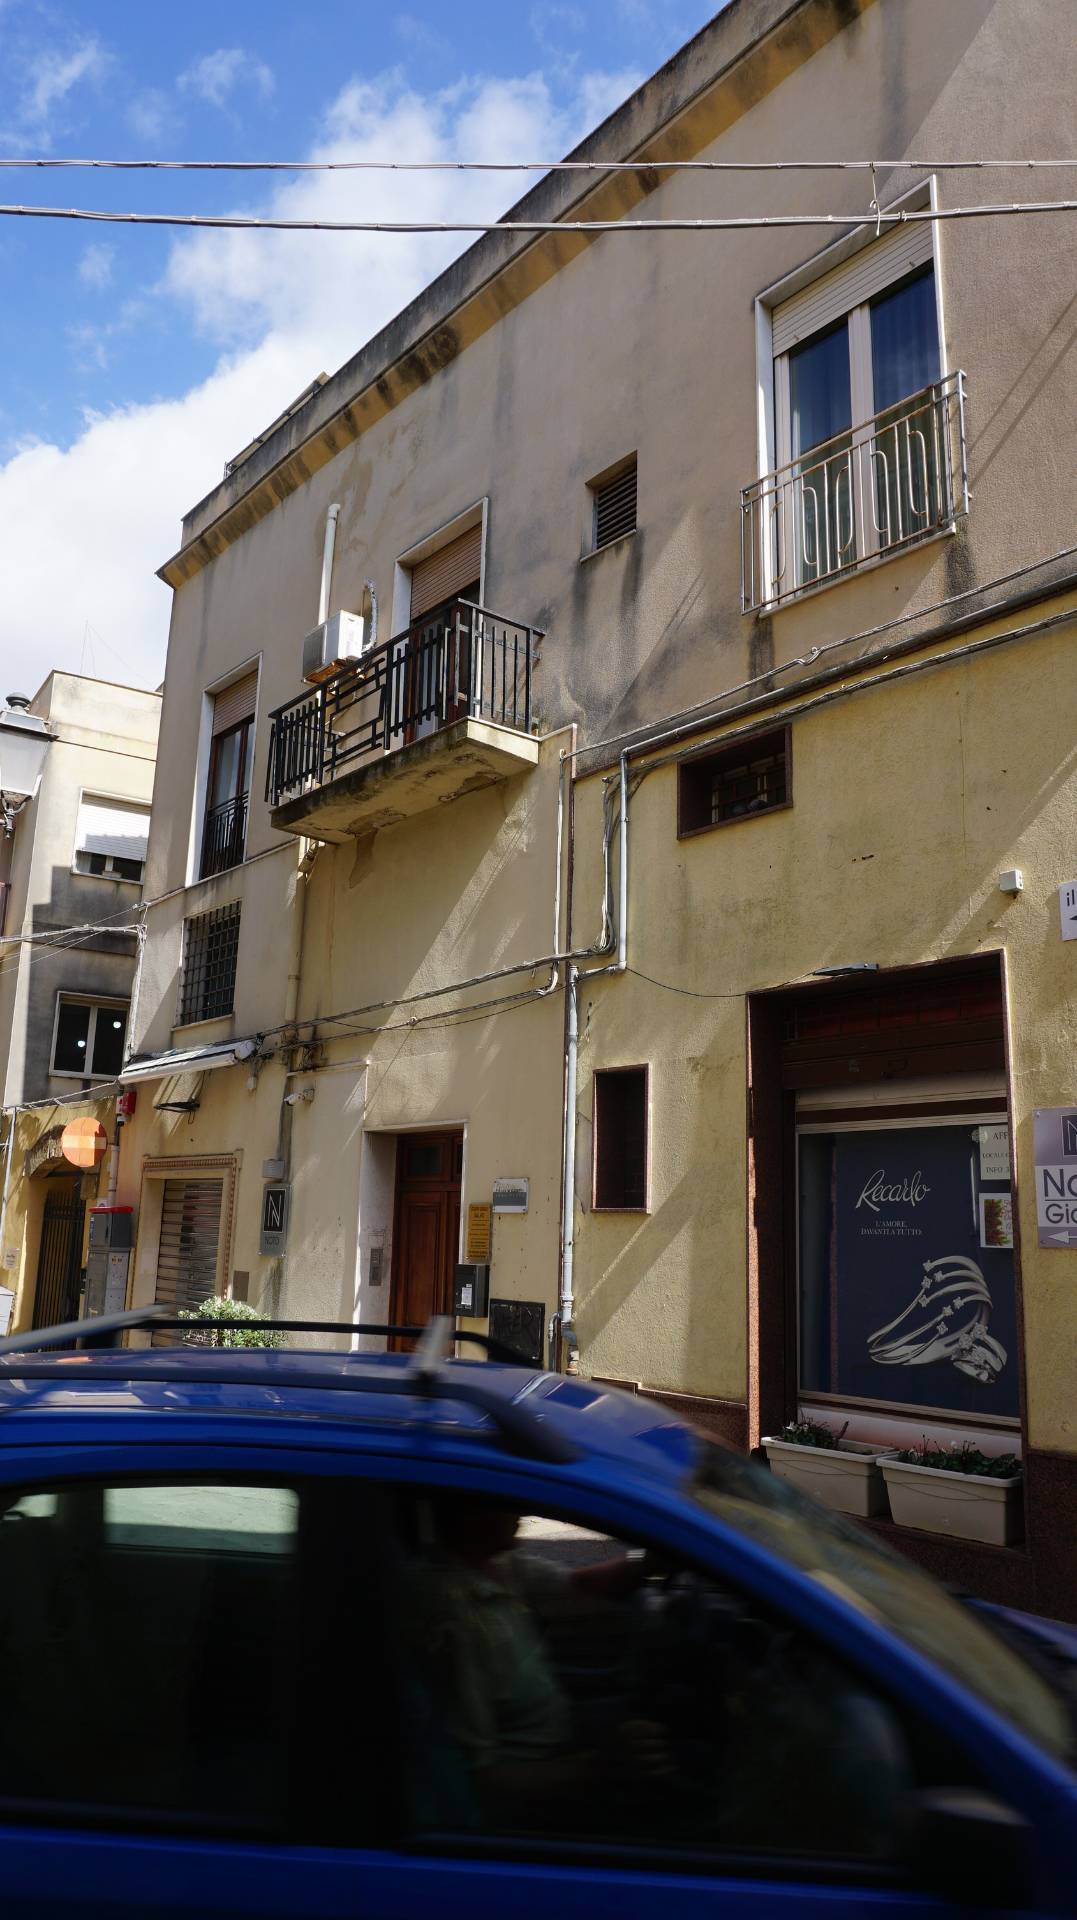 Appartamento in vendita a Castelvetrano, 3 locali, zona Località: CentroStorico, prezzo € 42.000 | PortaleAgenzieImmobiliari.it